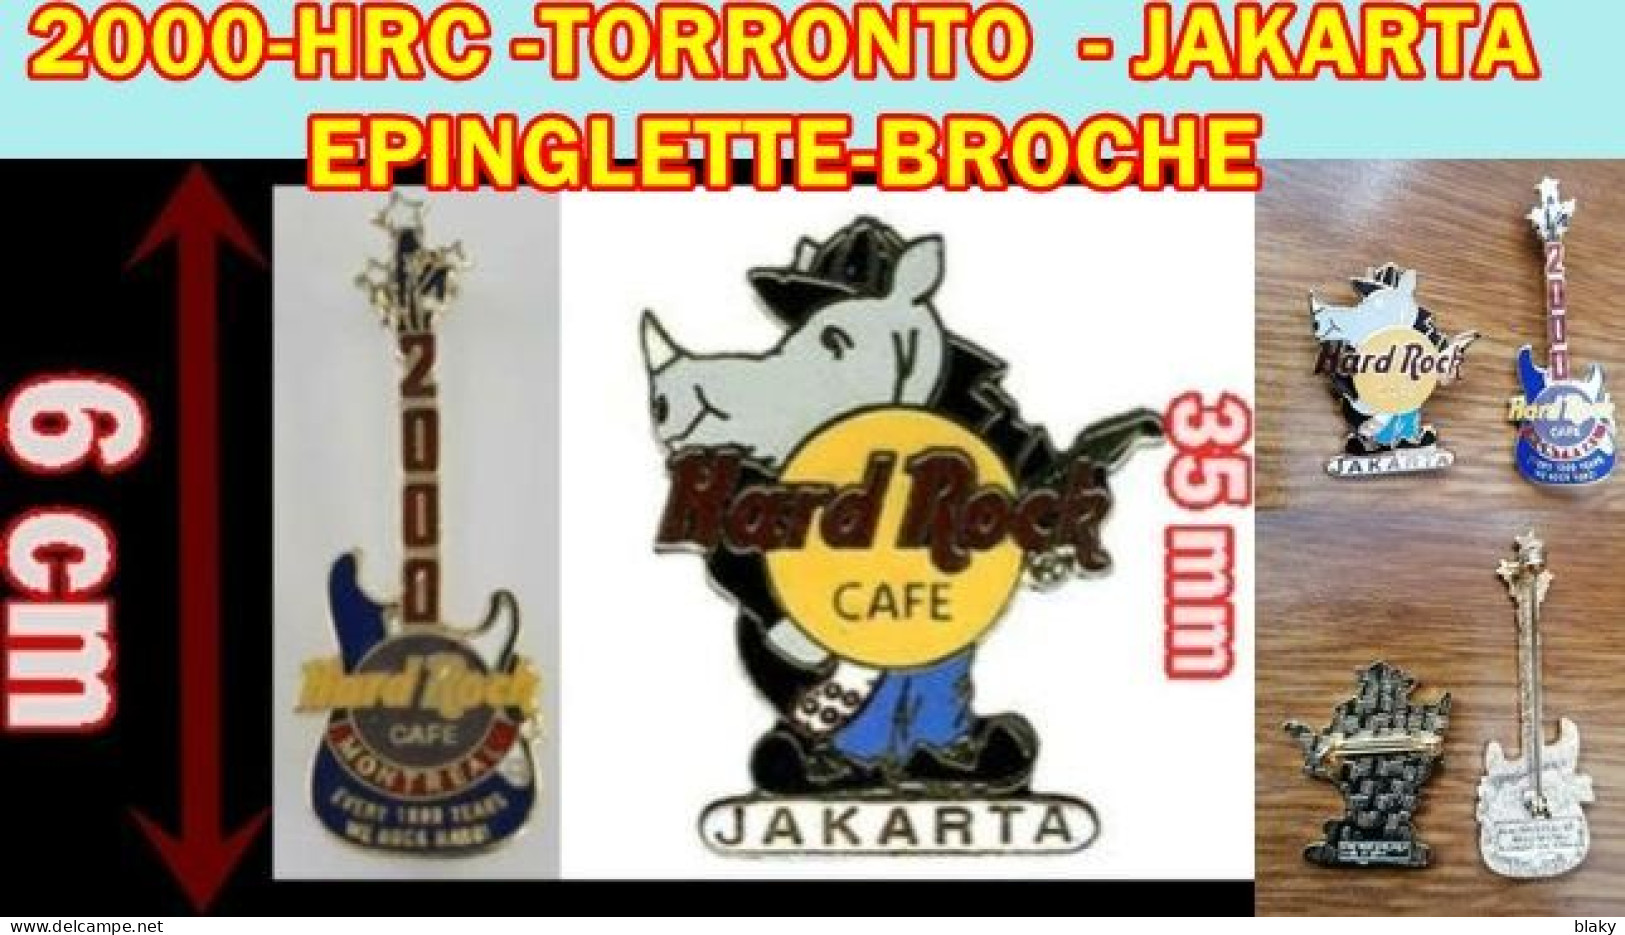 2000-TORRONTO EPINGLETTE - JAKARTA EPINGLETTE-BROCHE - EDF GDF